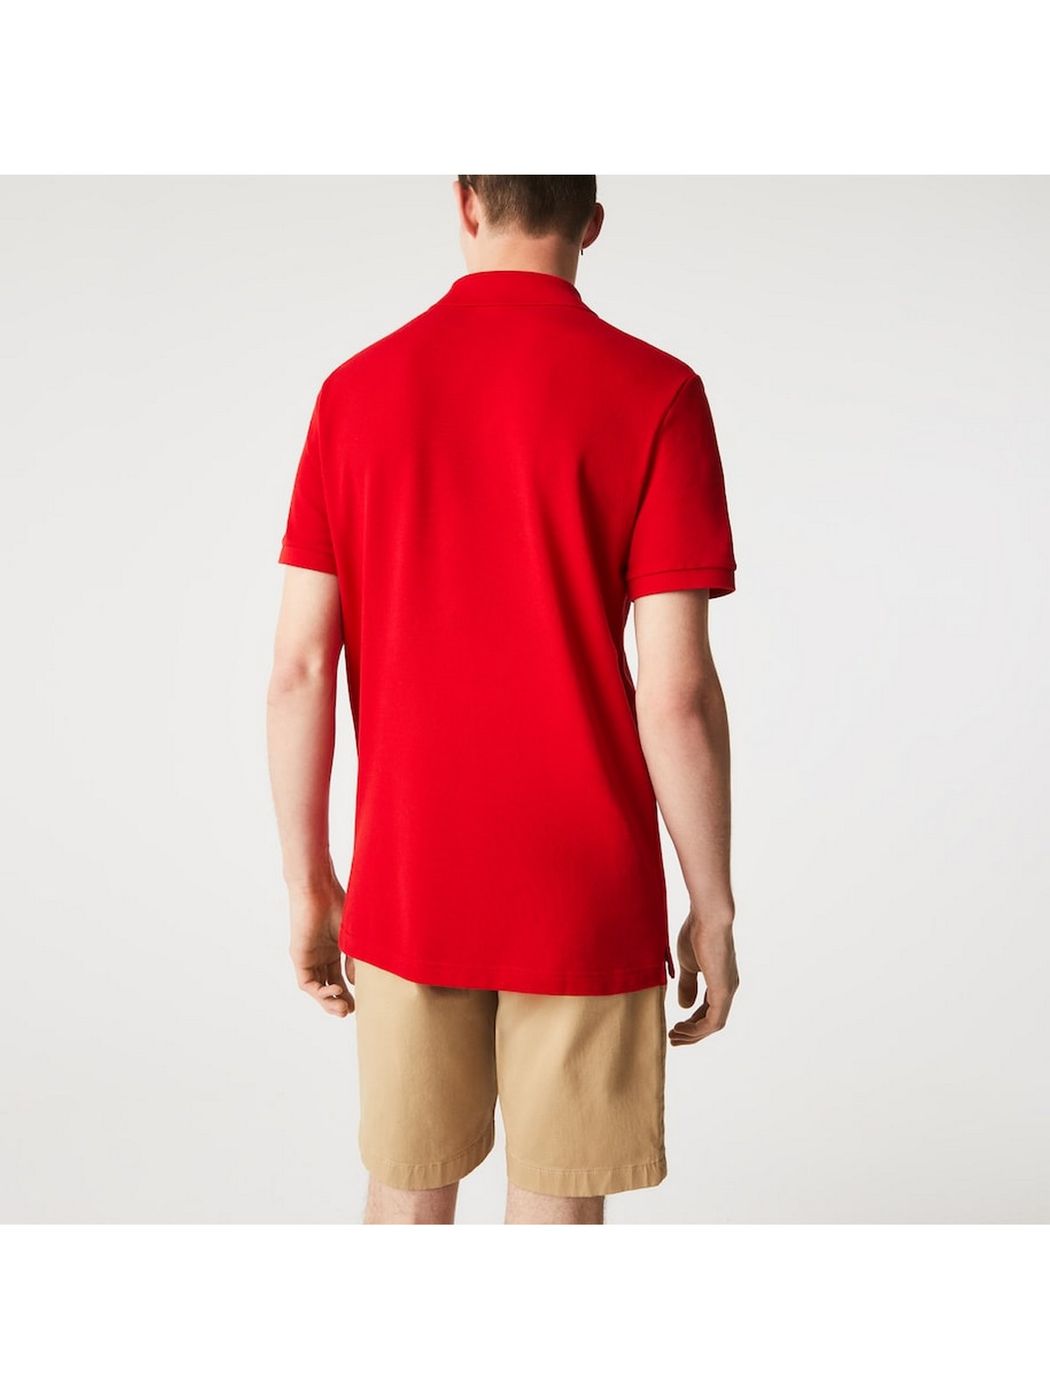 LACOSTE T-Shirt e Polo Uomo  PH4012 240 Rosso